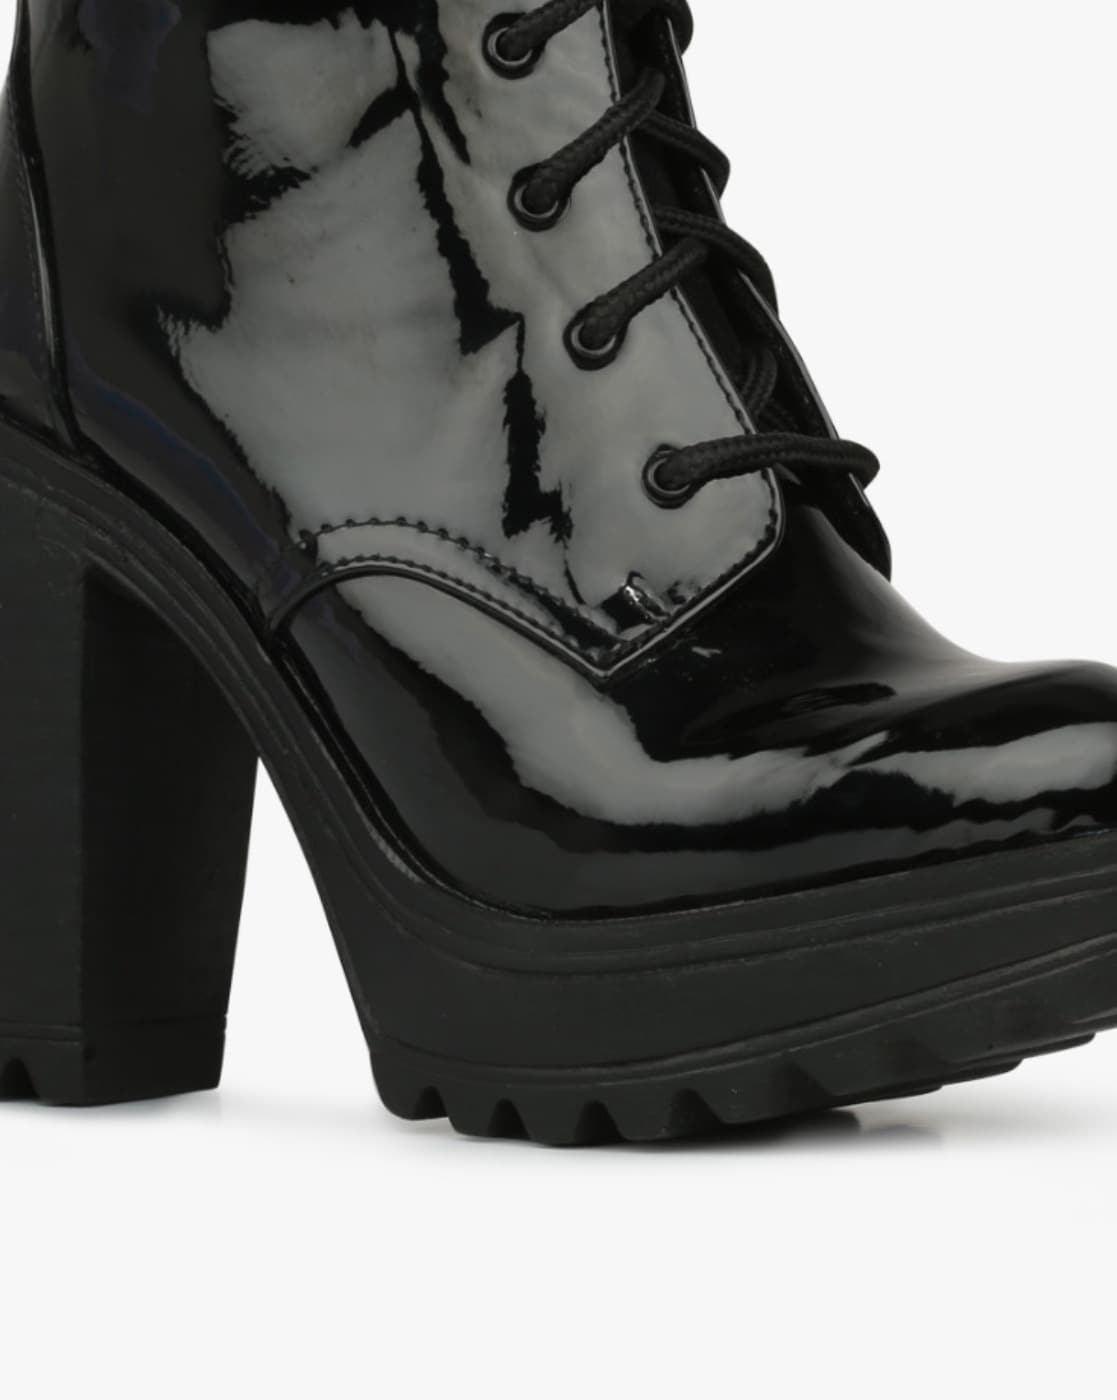 catwalk boots online shopping